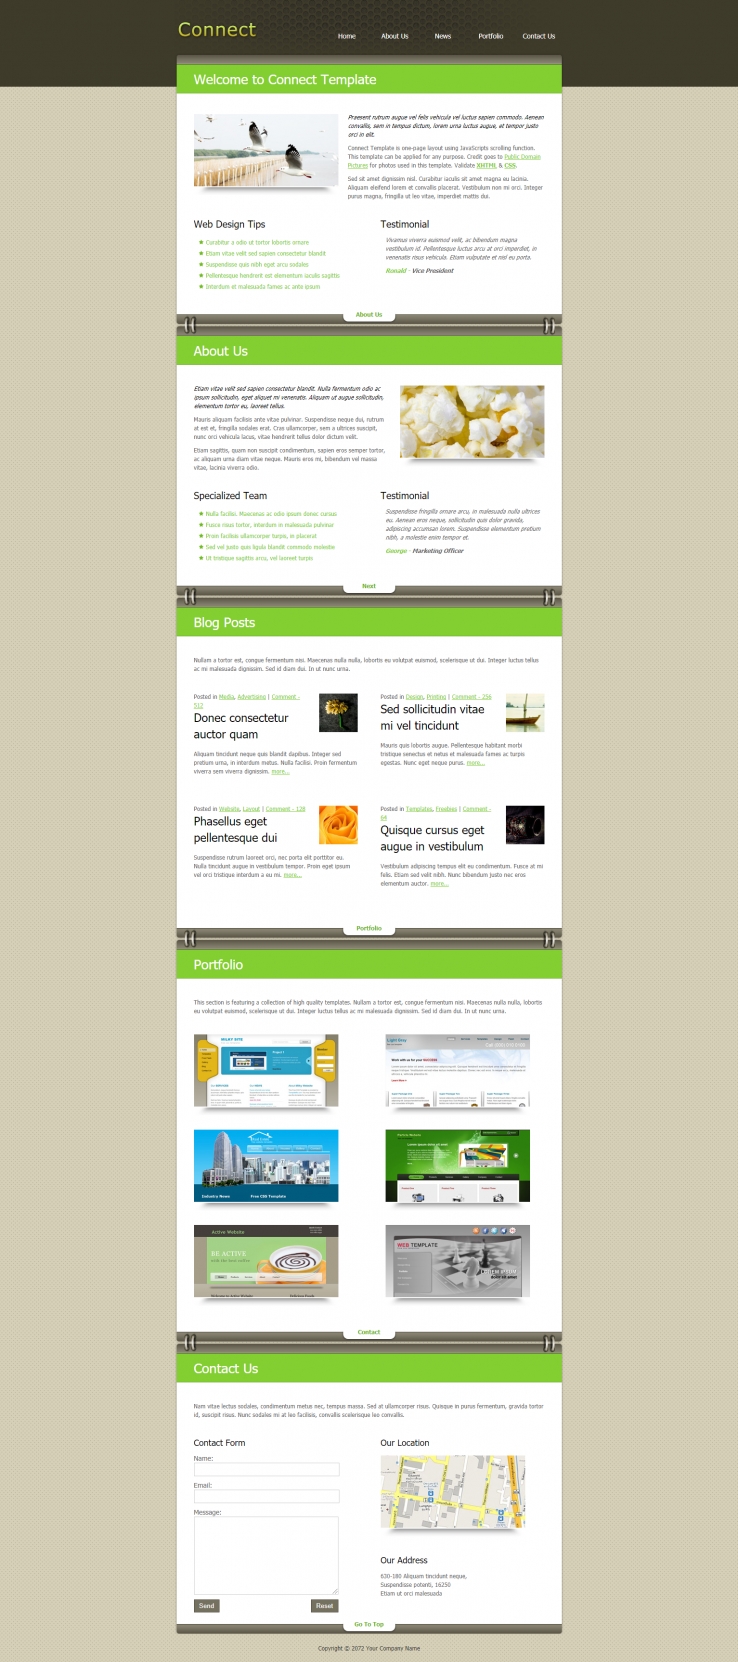 绿色简洁风格的面板连接信息页源码下载